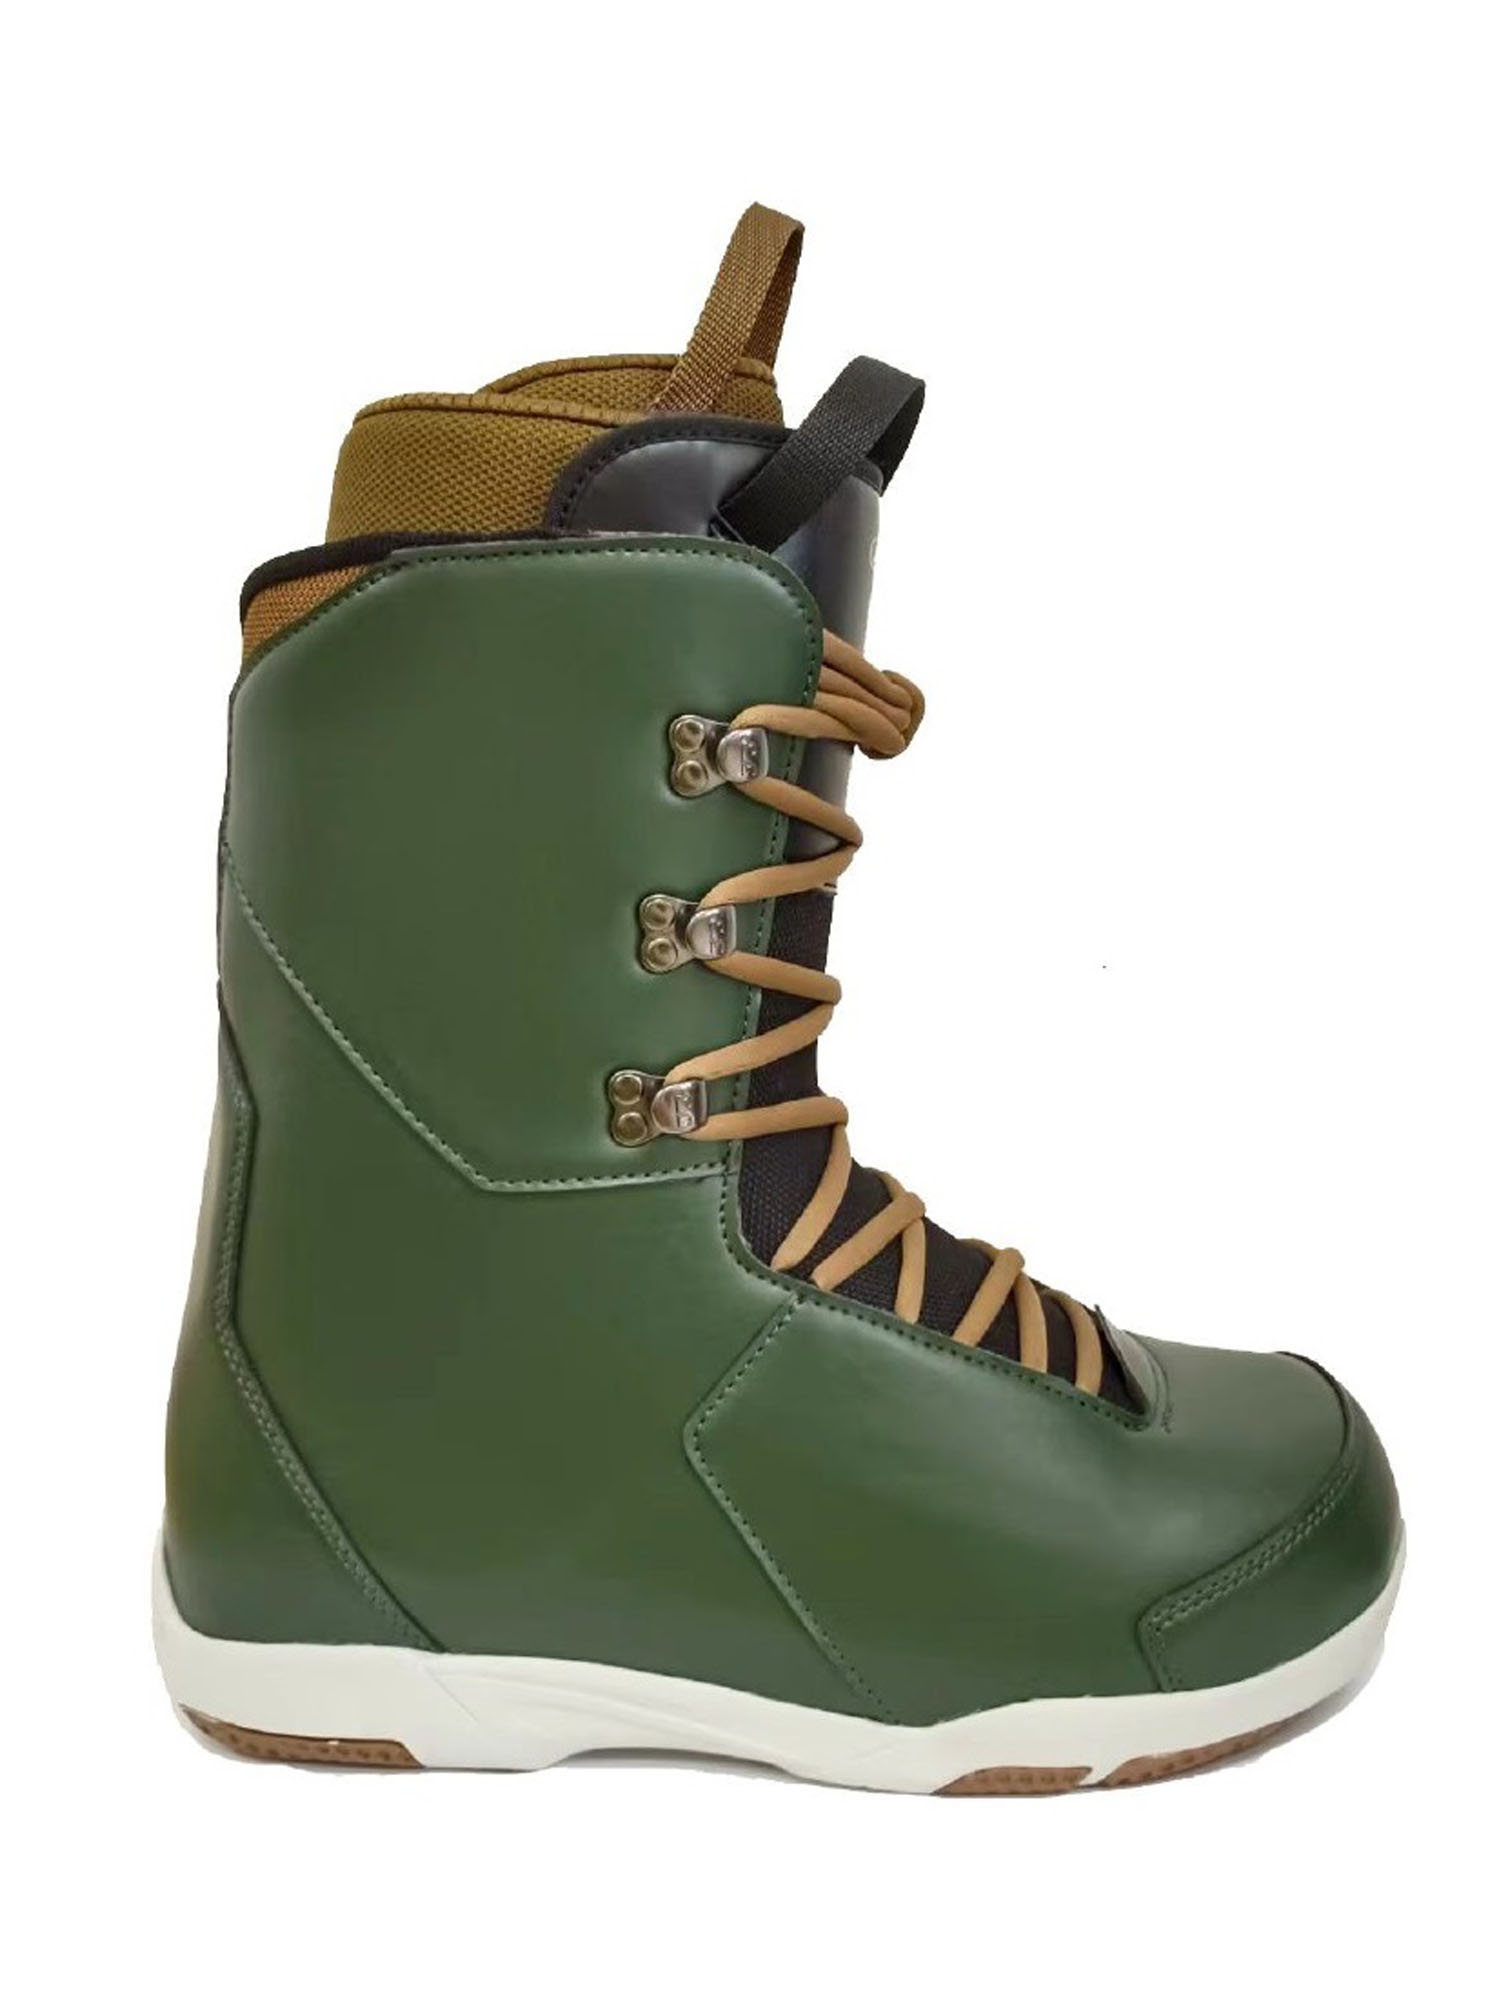 Ботинки для сноуборда Joint  Forceful 2023 grey green/light brown 28 см